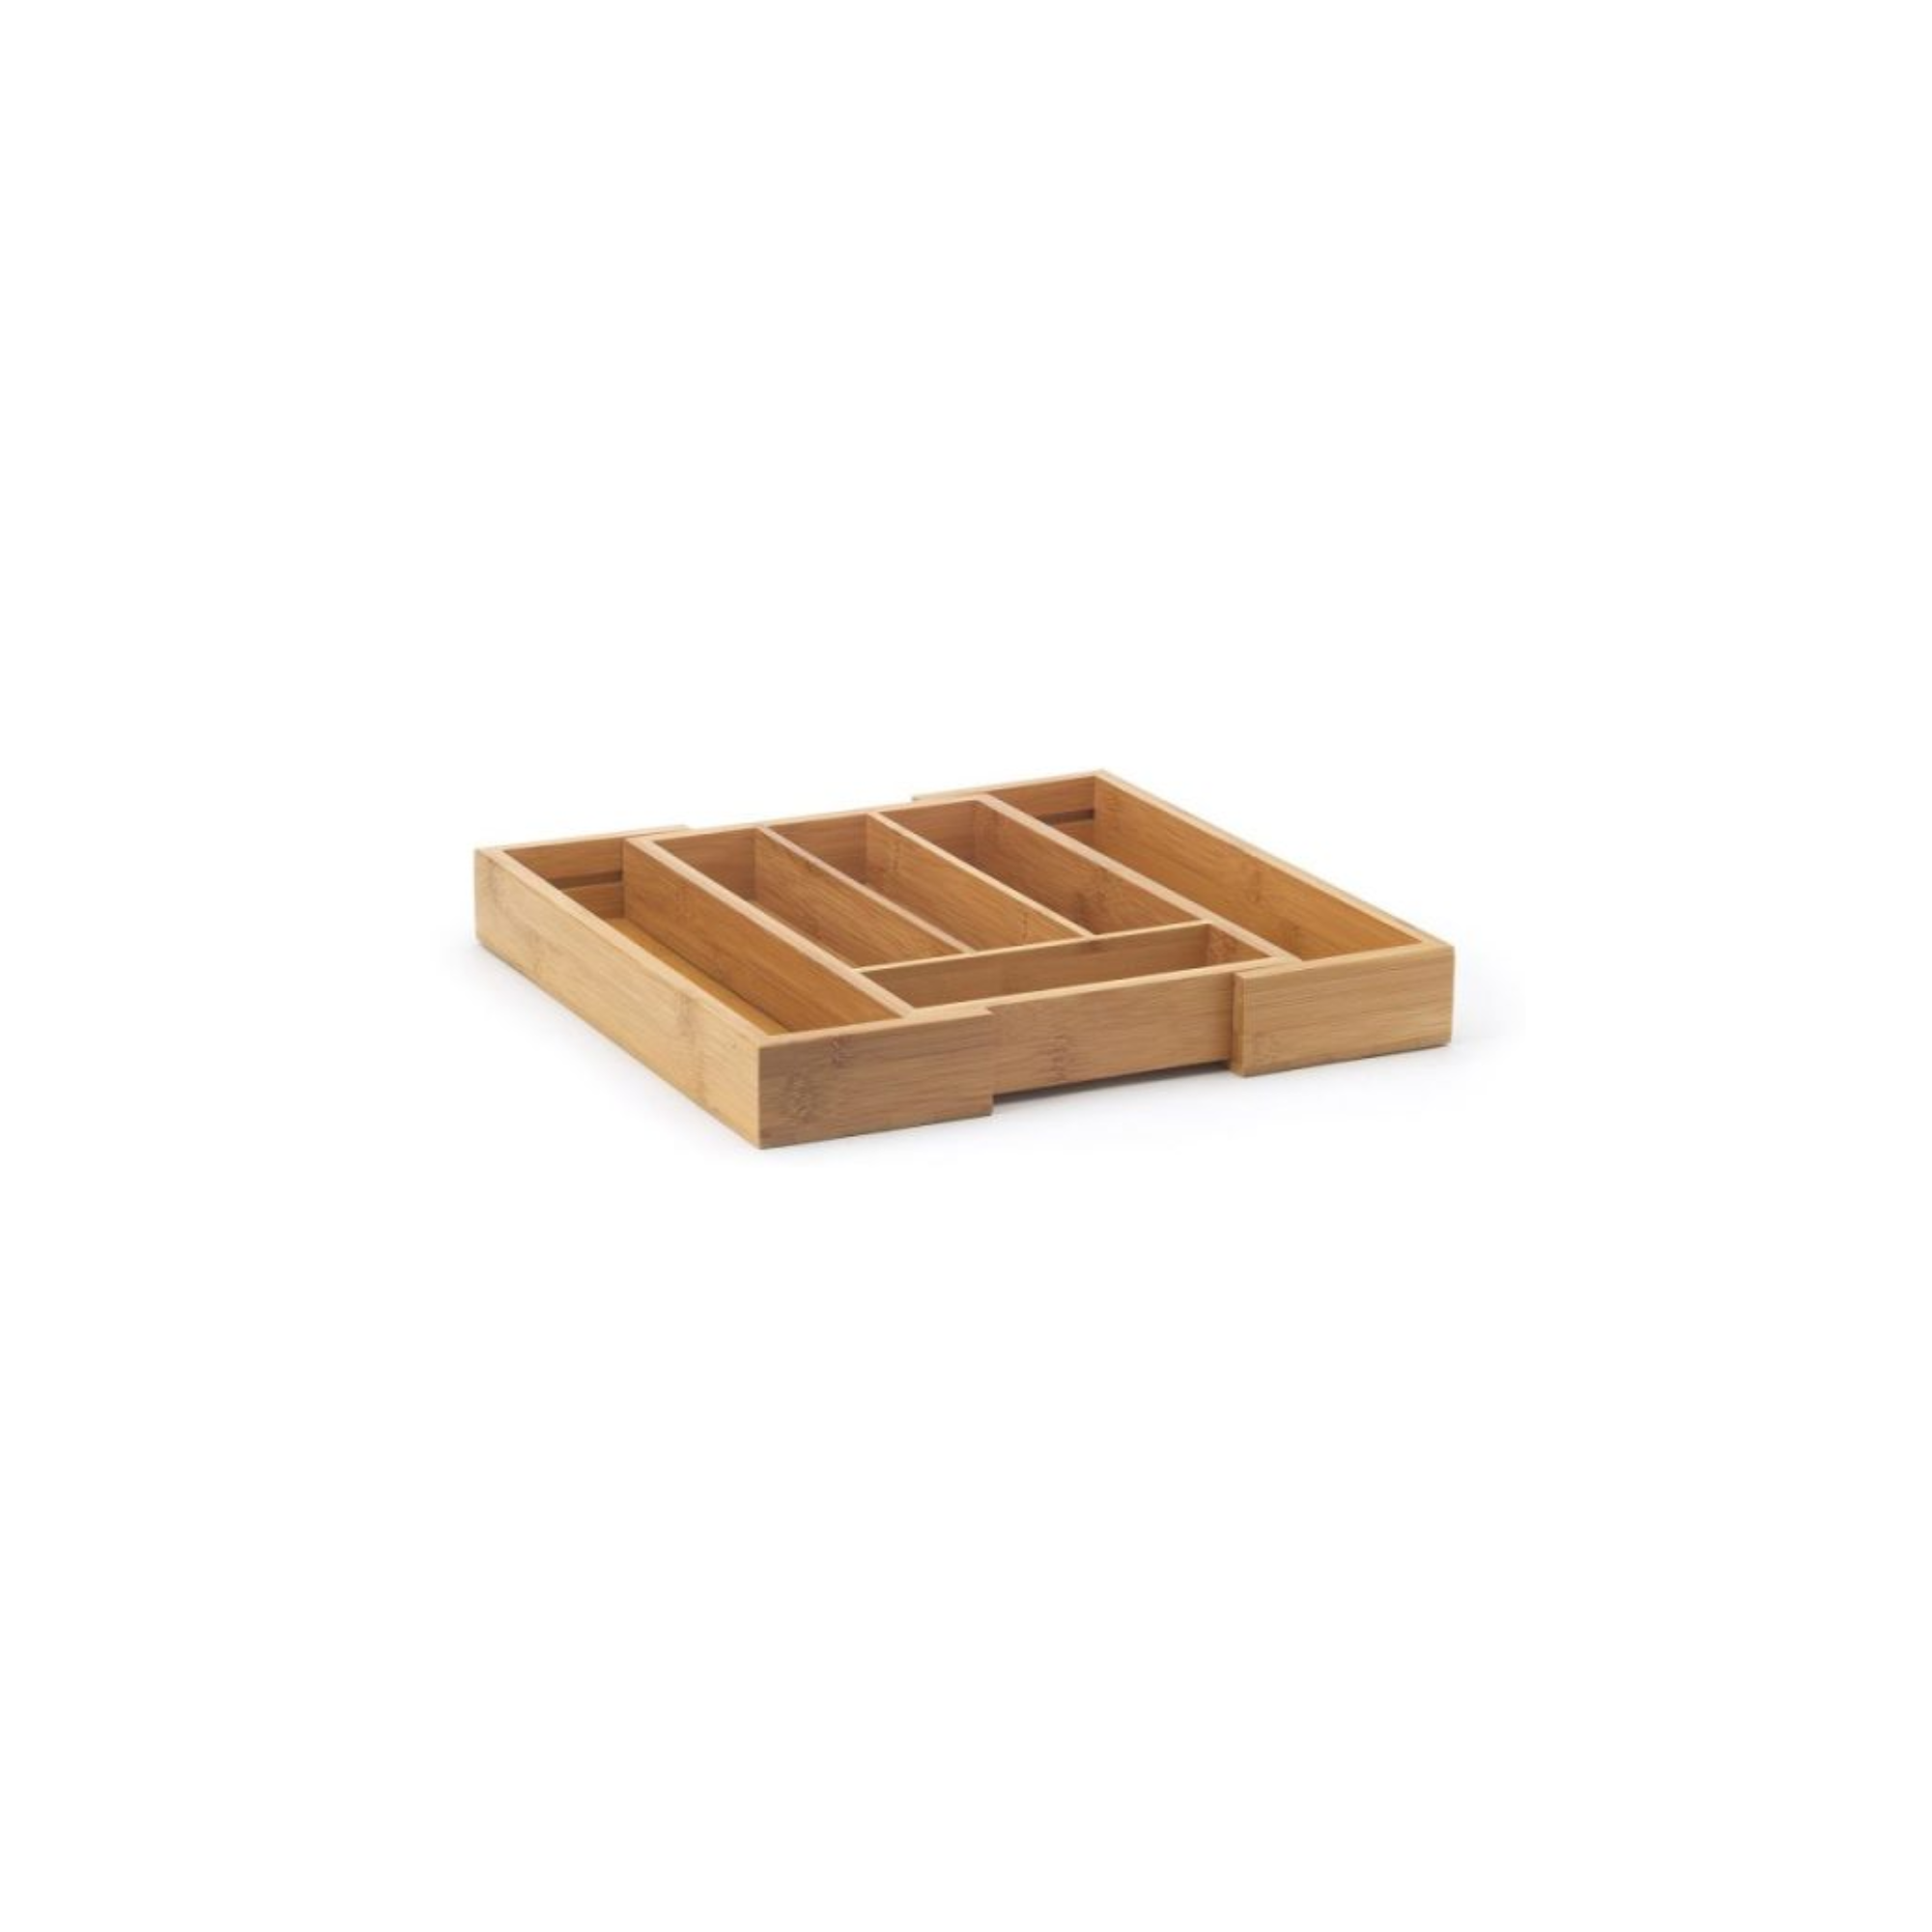 La bandeja de madera para cubiertos se divide en compartimentos y